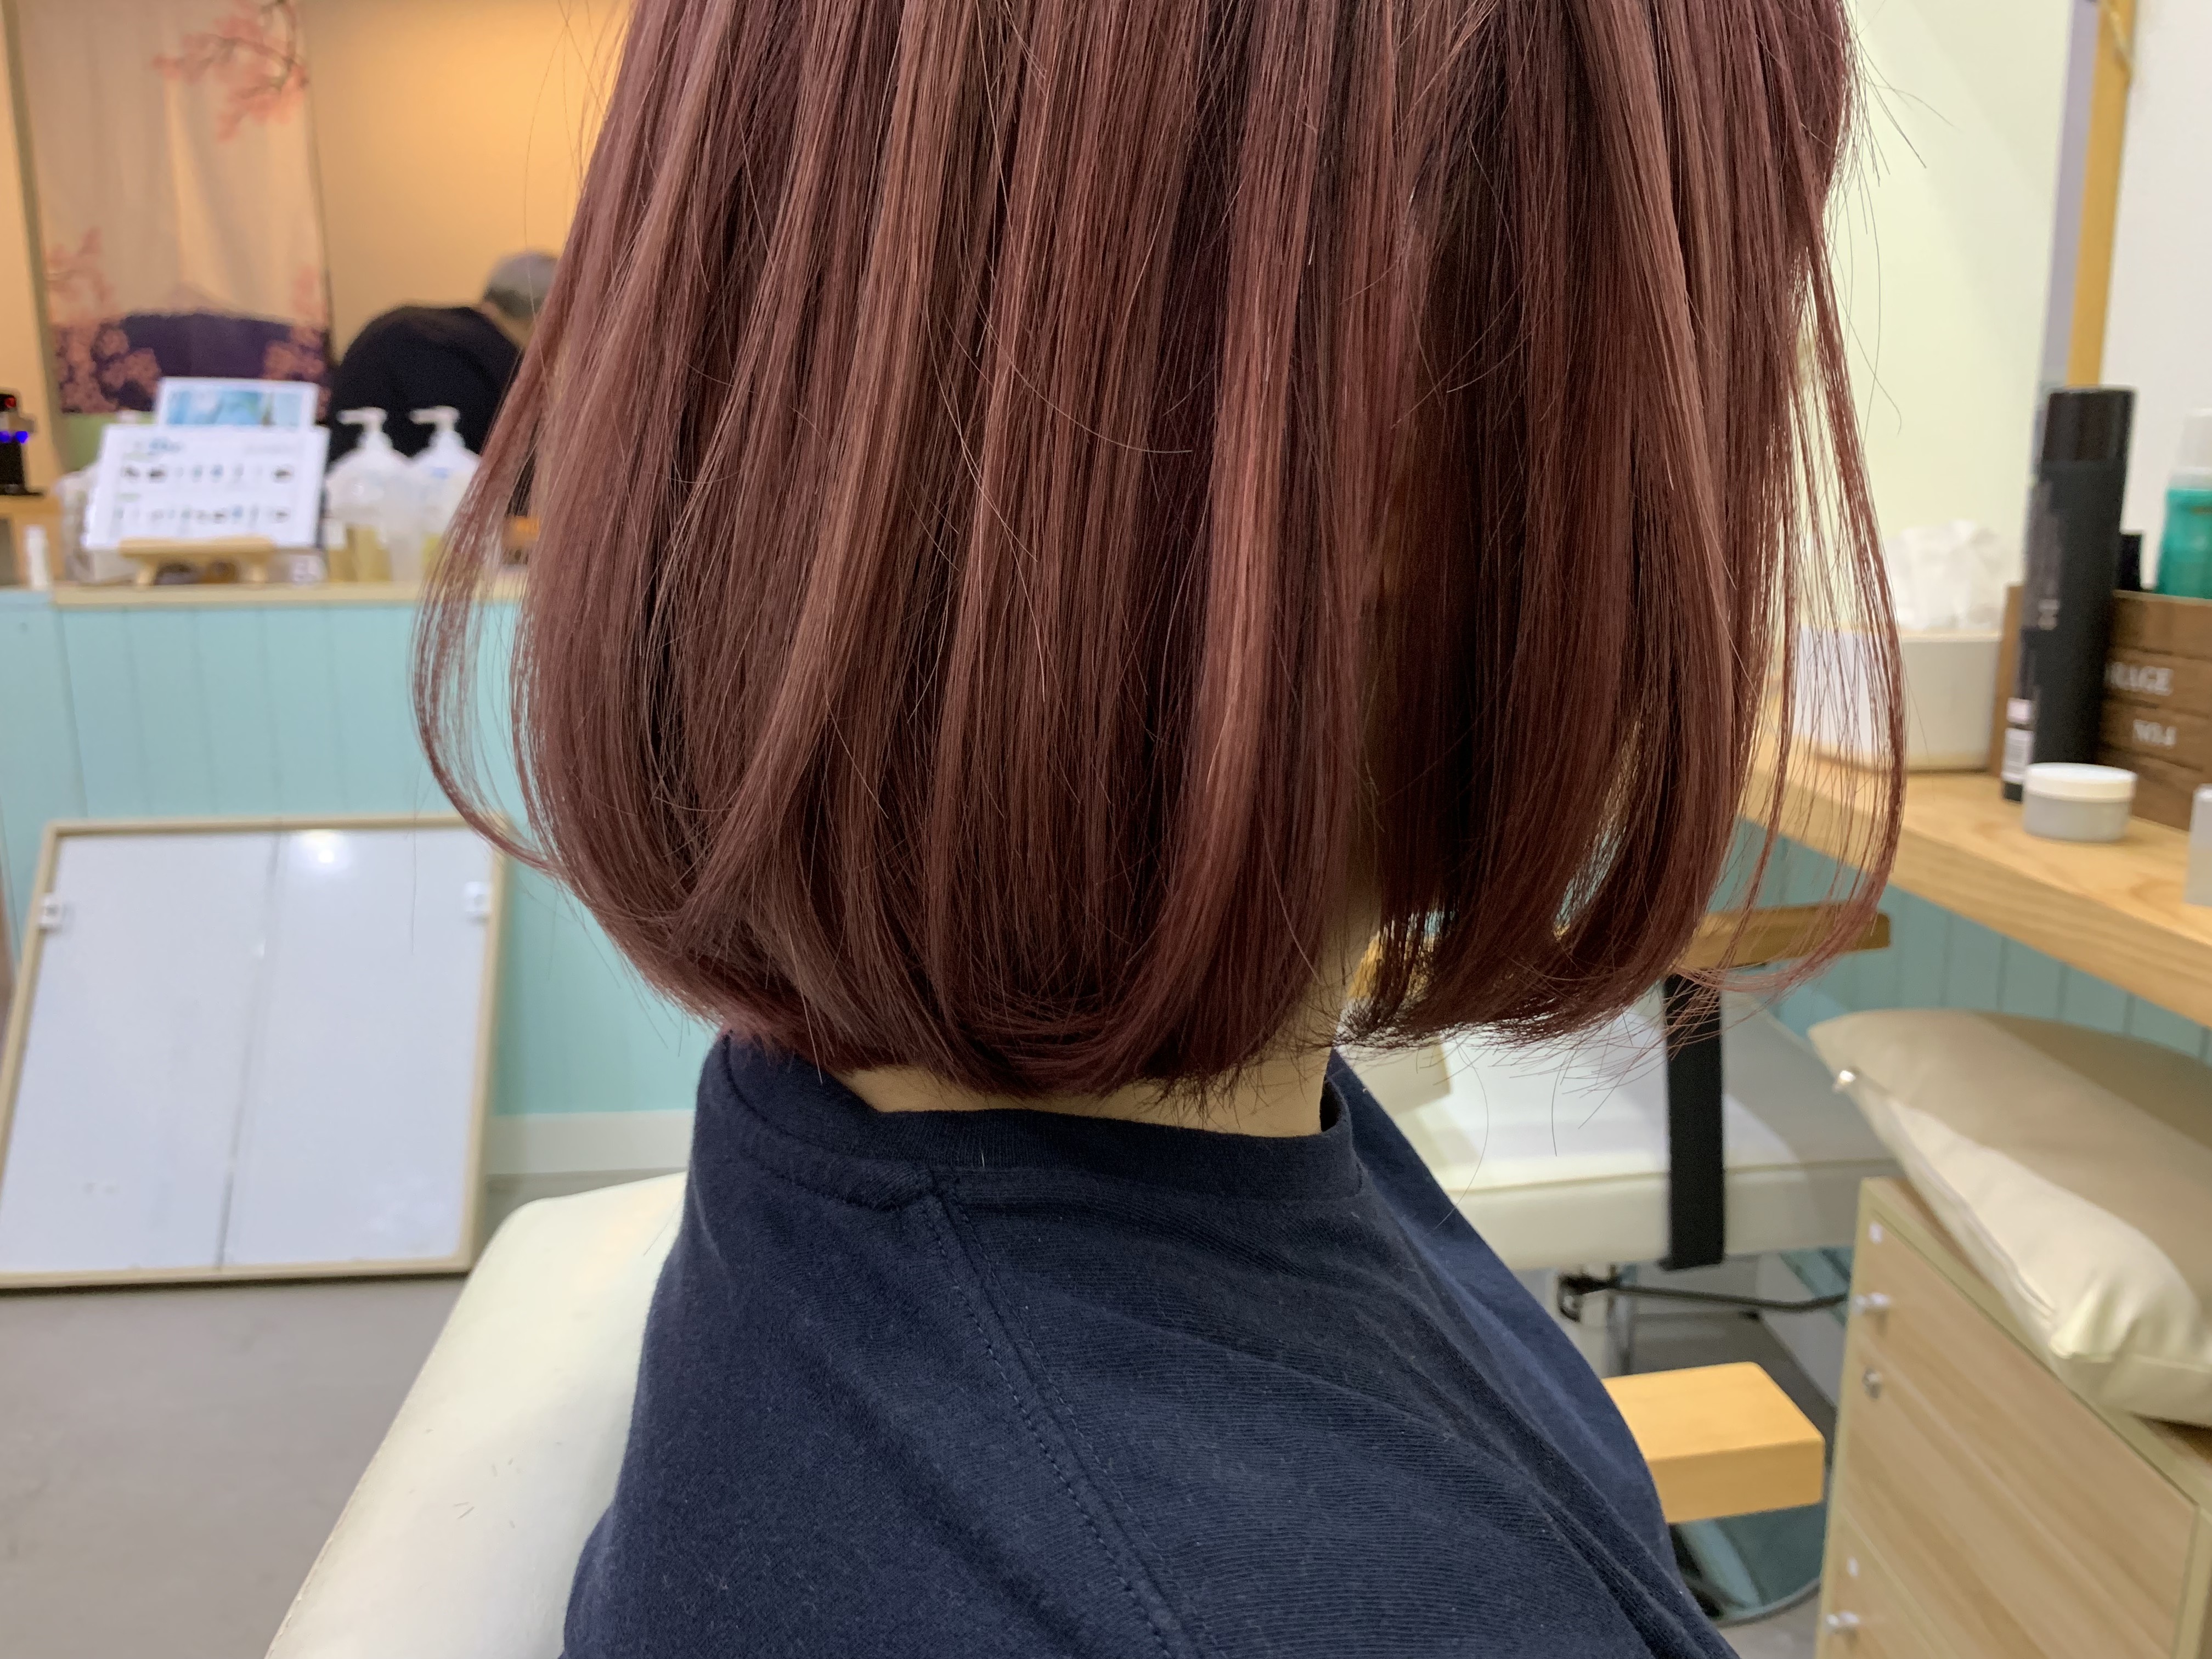 髮型作品參考:日本草莓色系